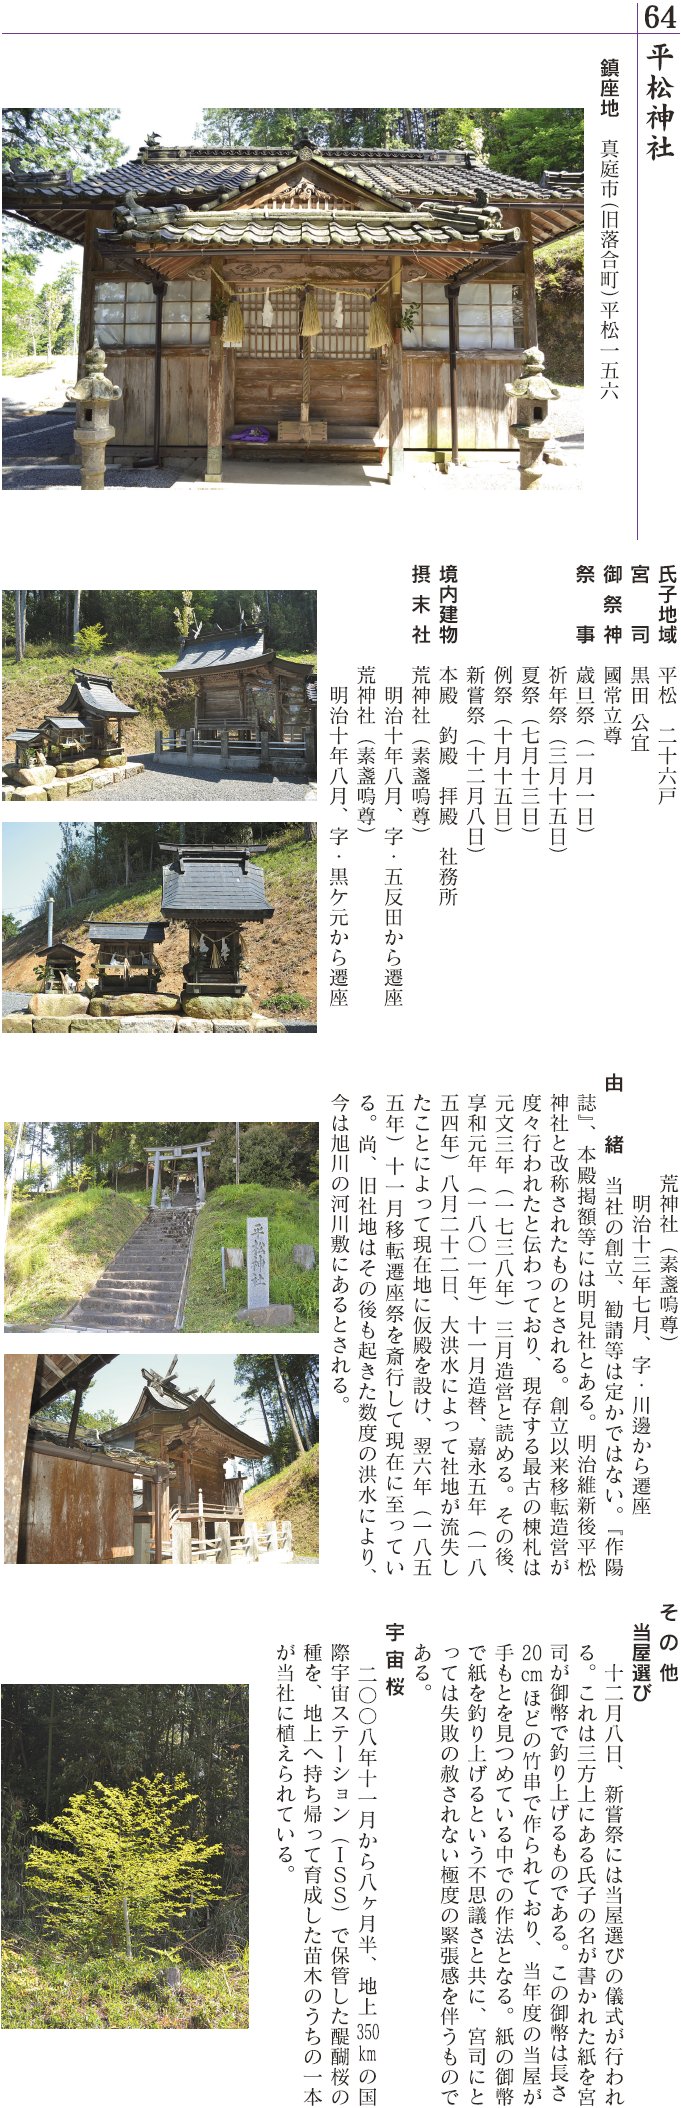 64 平松神社